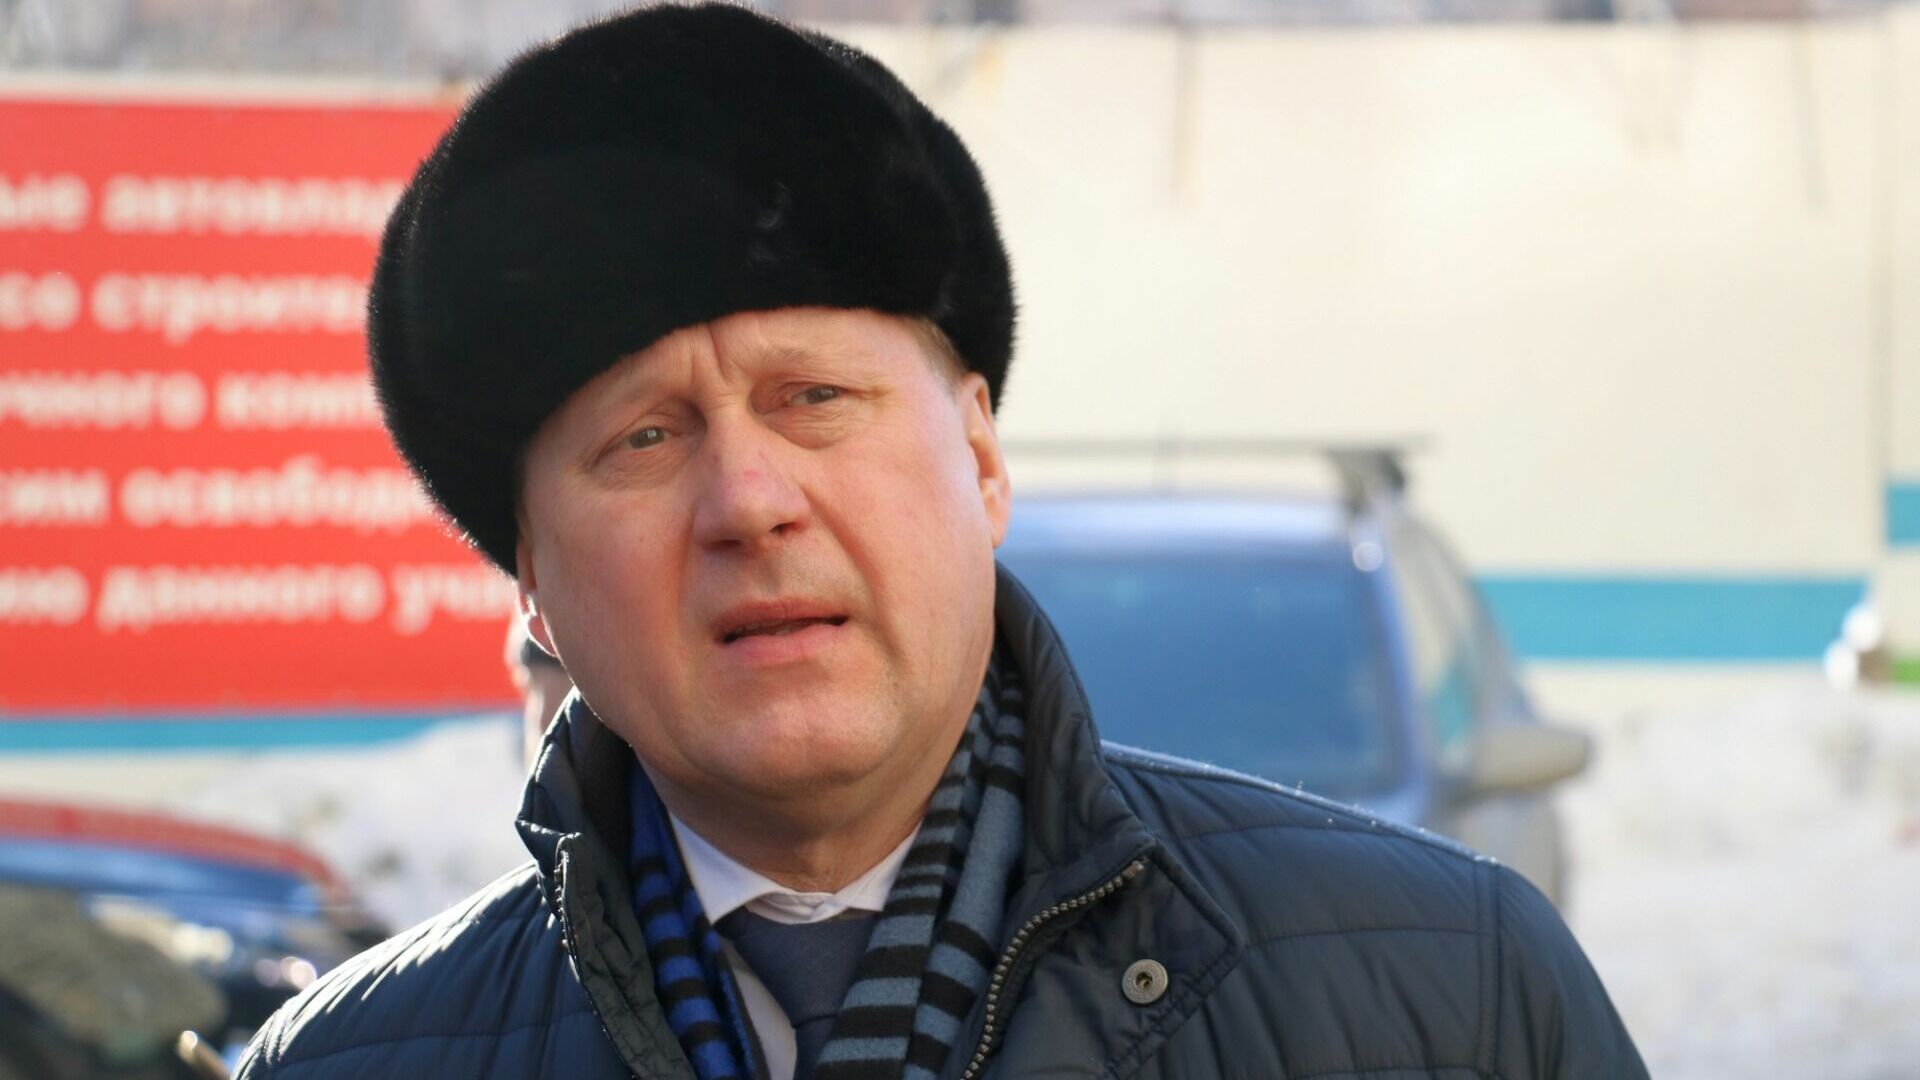 Локоть работает на посту мэра Новосибирска второй срок